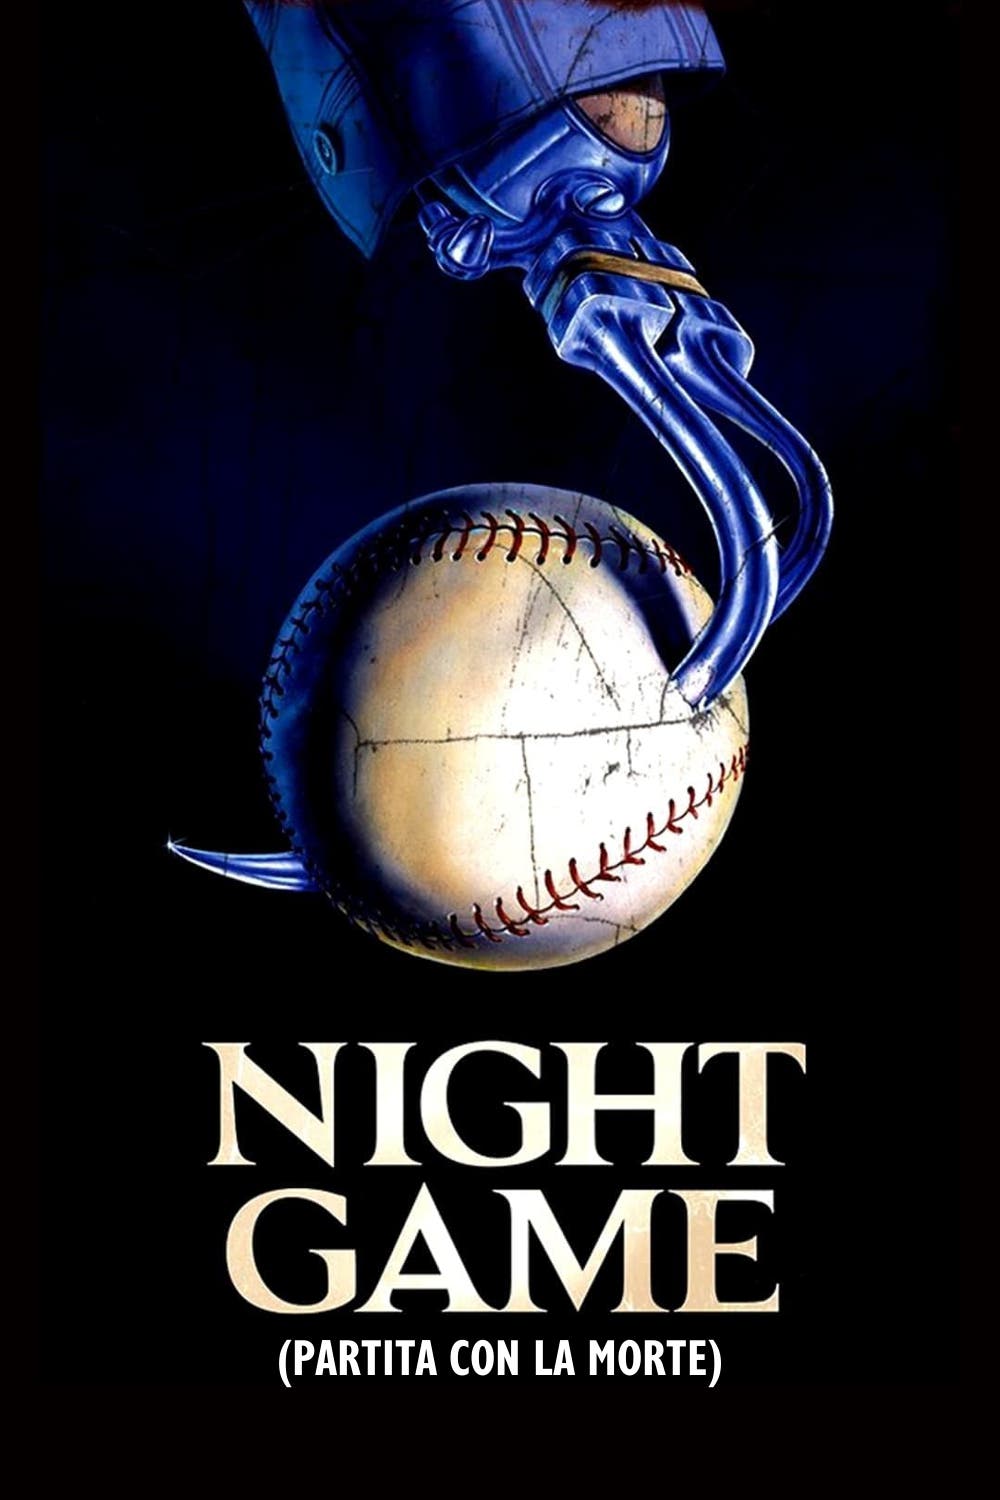 Night Game – Partita con la morte [HD] (1989)